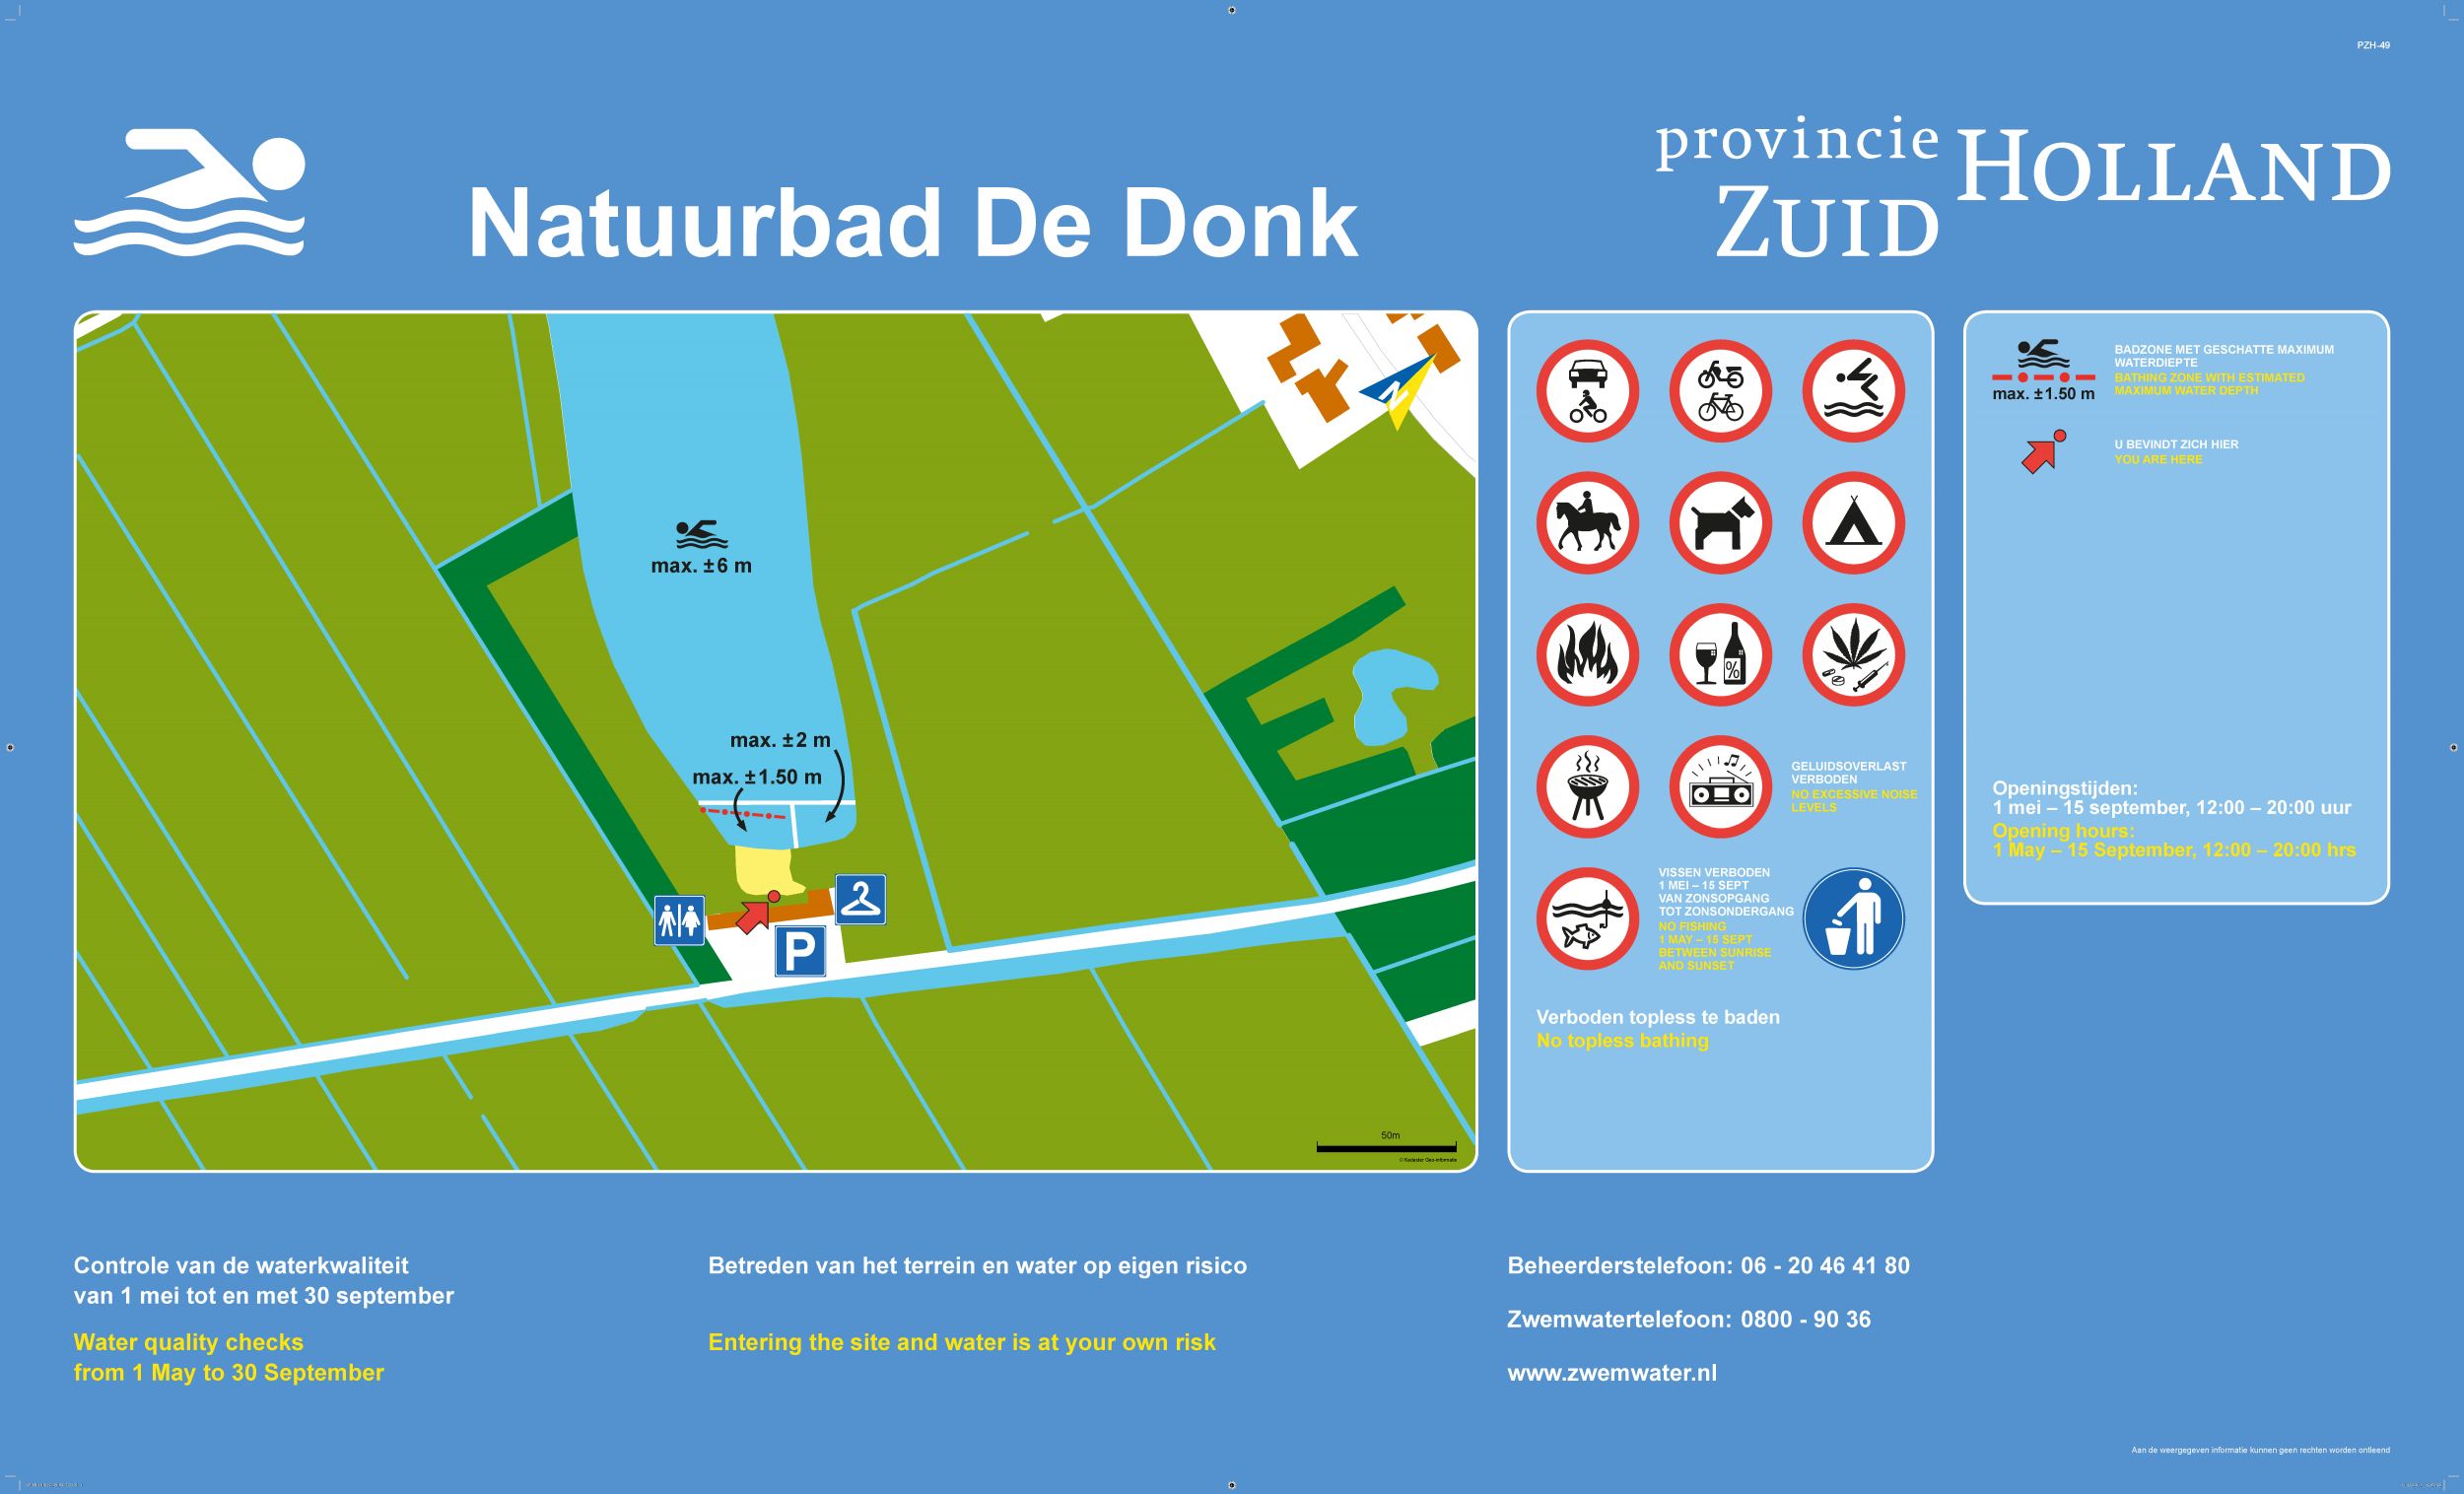 Het informatiebord bij zwemlocatie Natuurbad De Donk